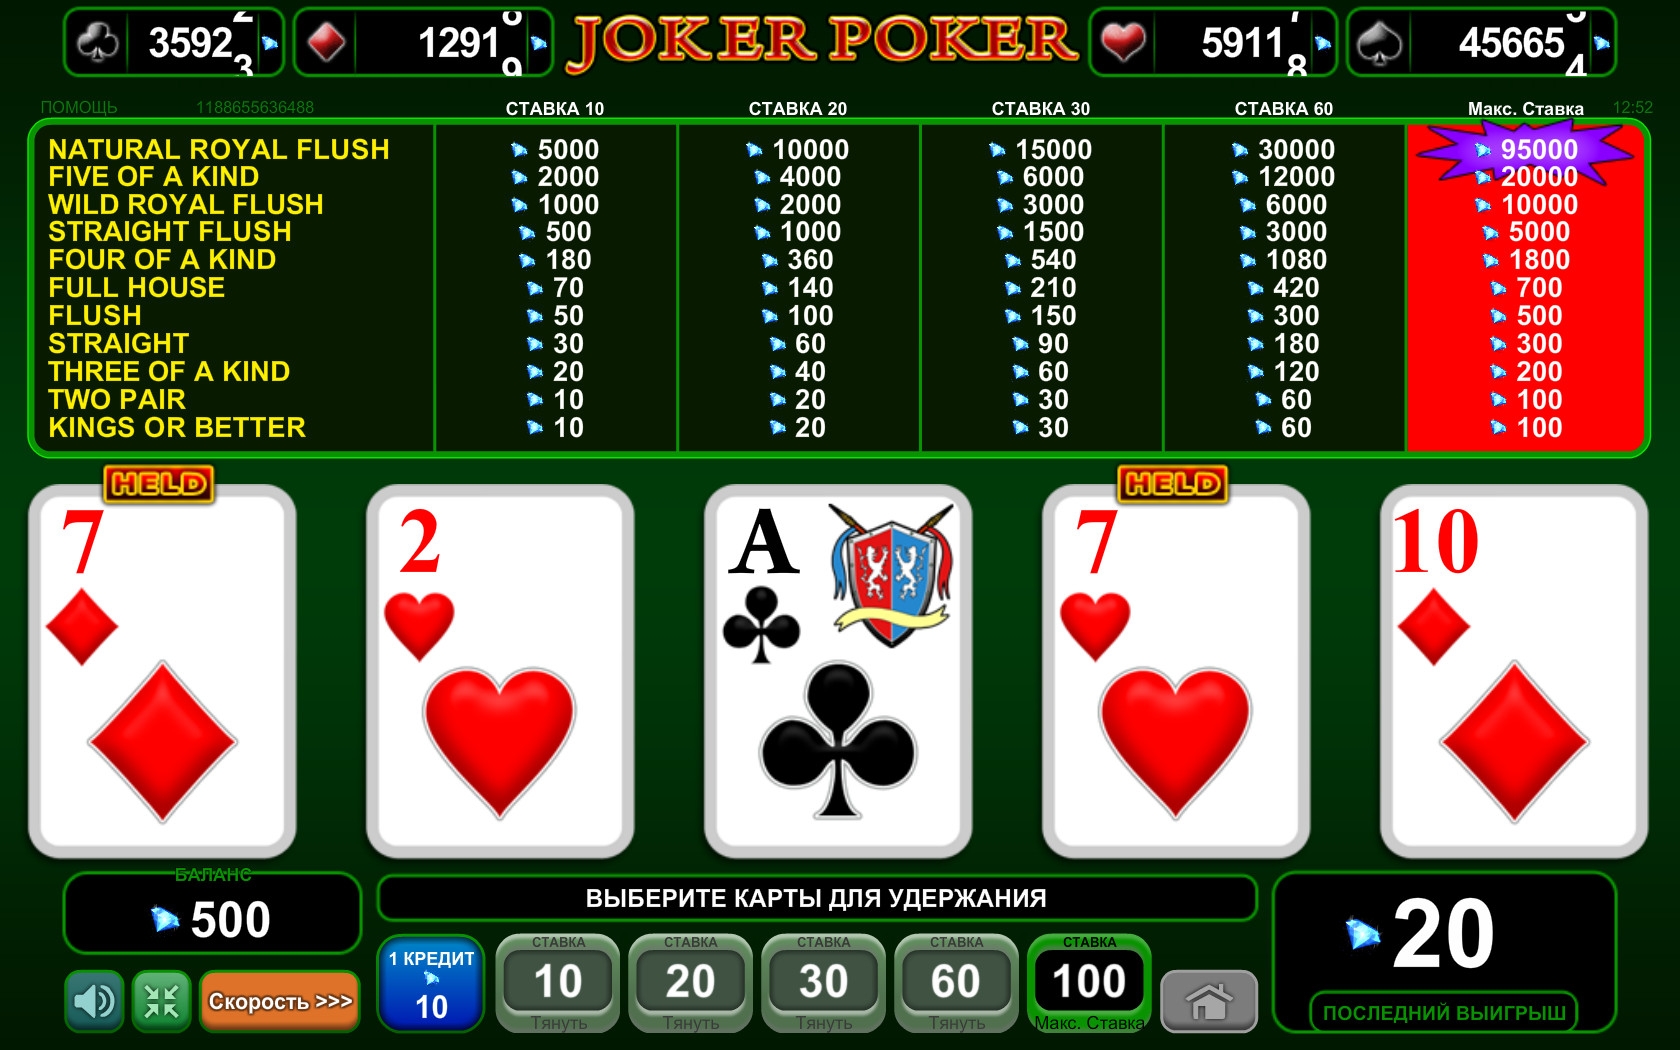 Joker Poker (Joker Poker) from category Video Poker